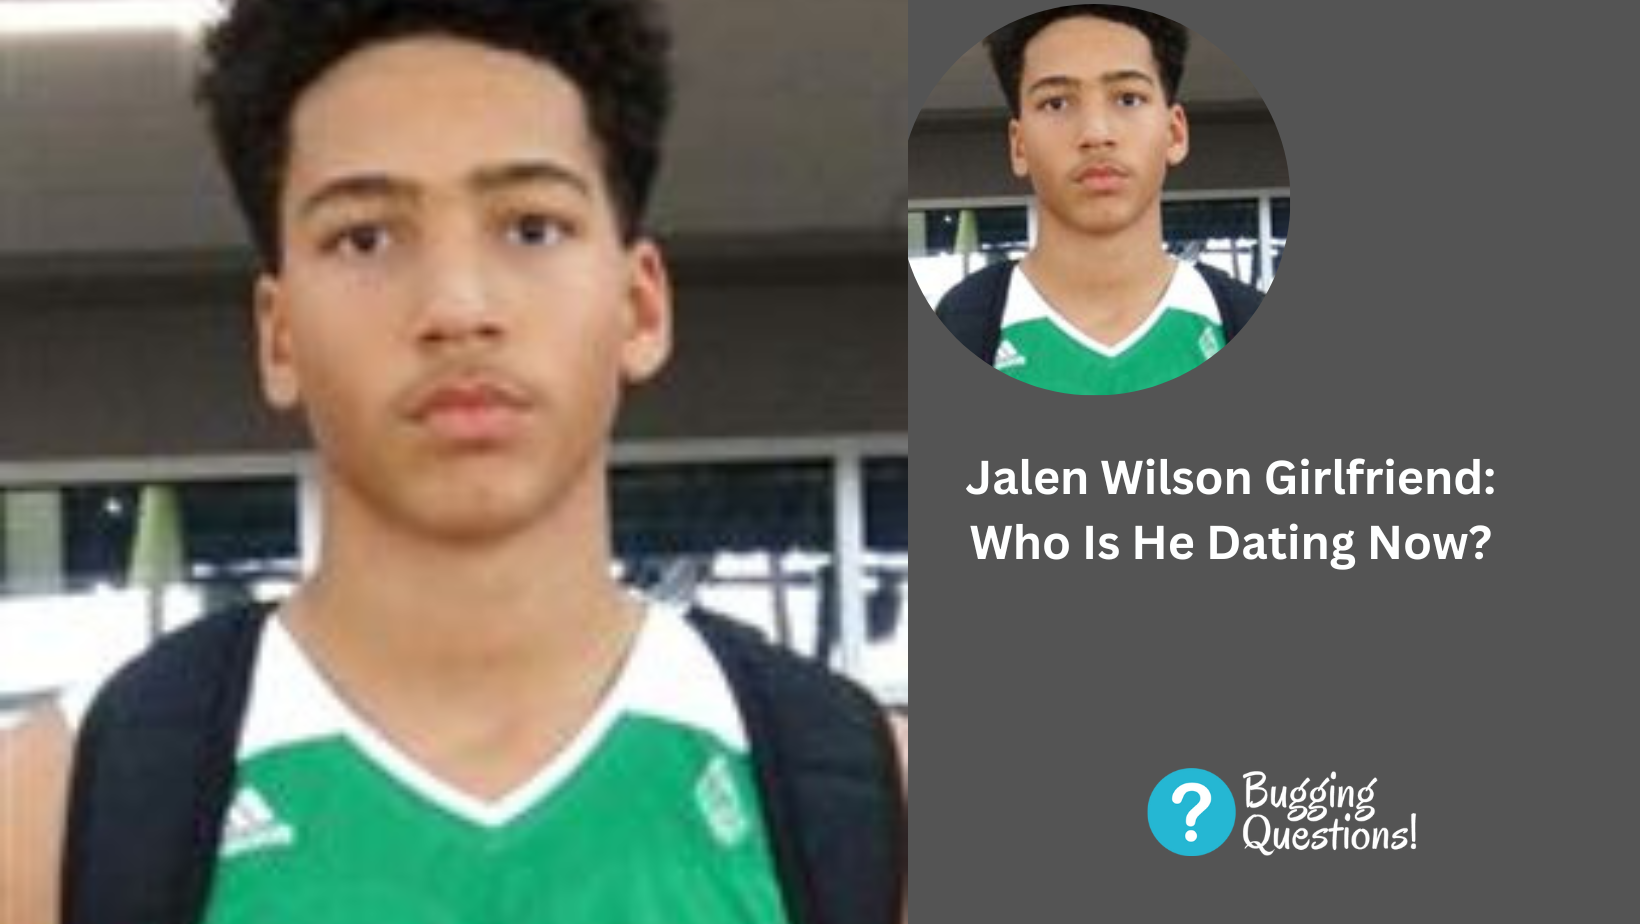 Jalen Wilson Girlfriend: Who Is He Dating Now?